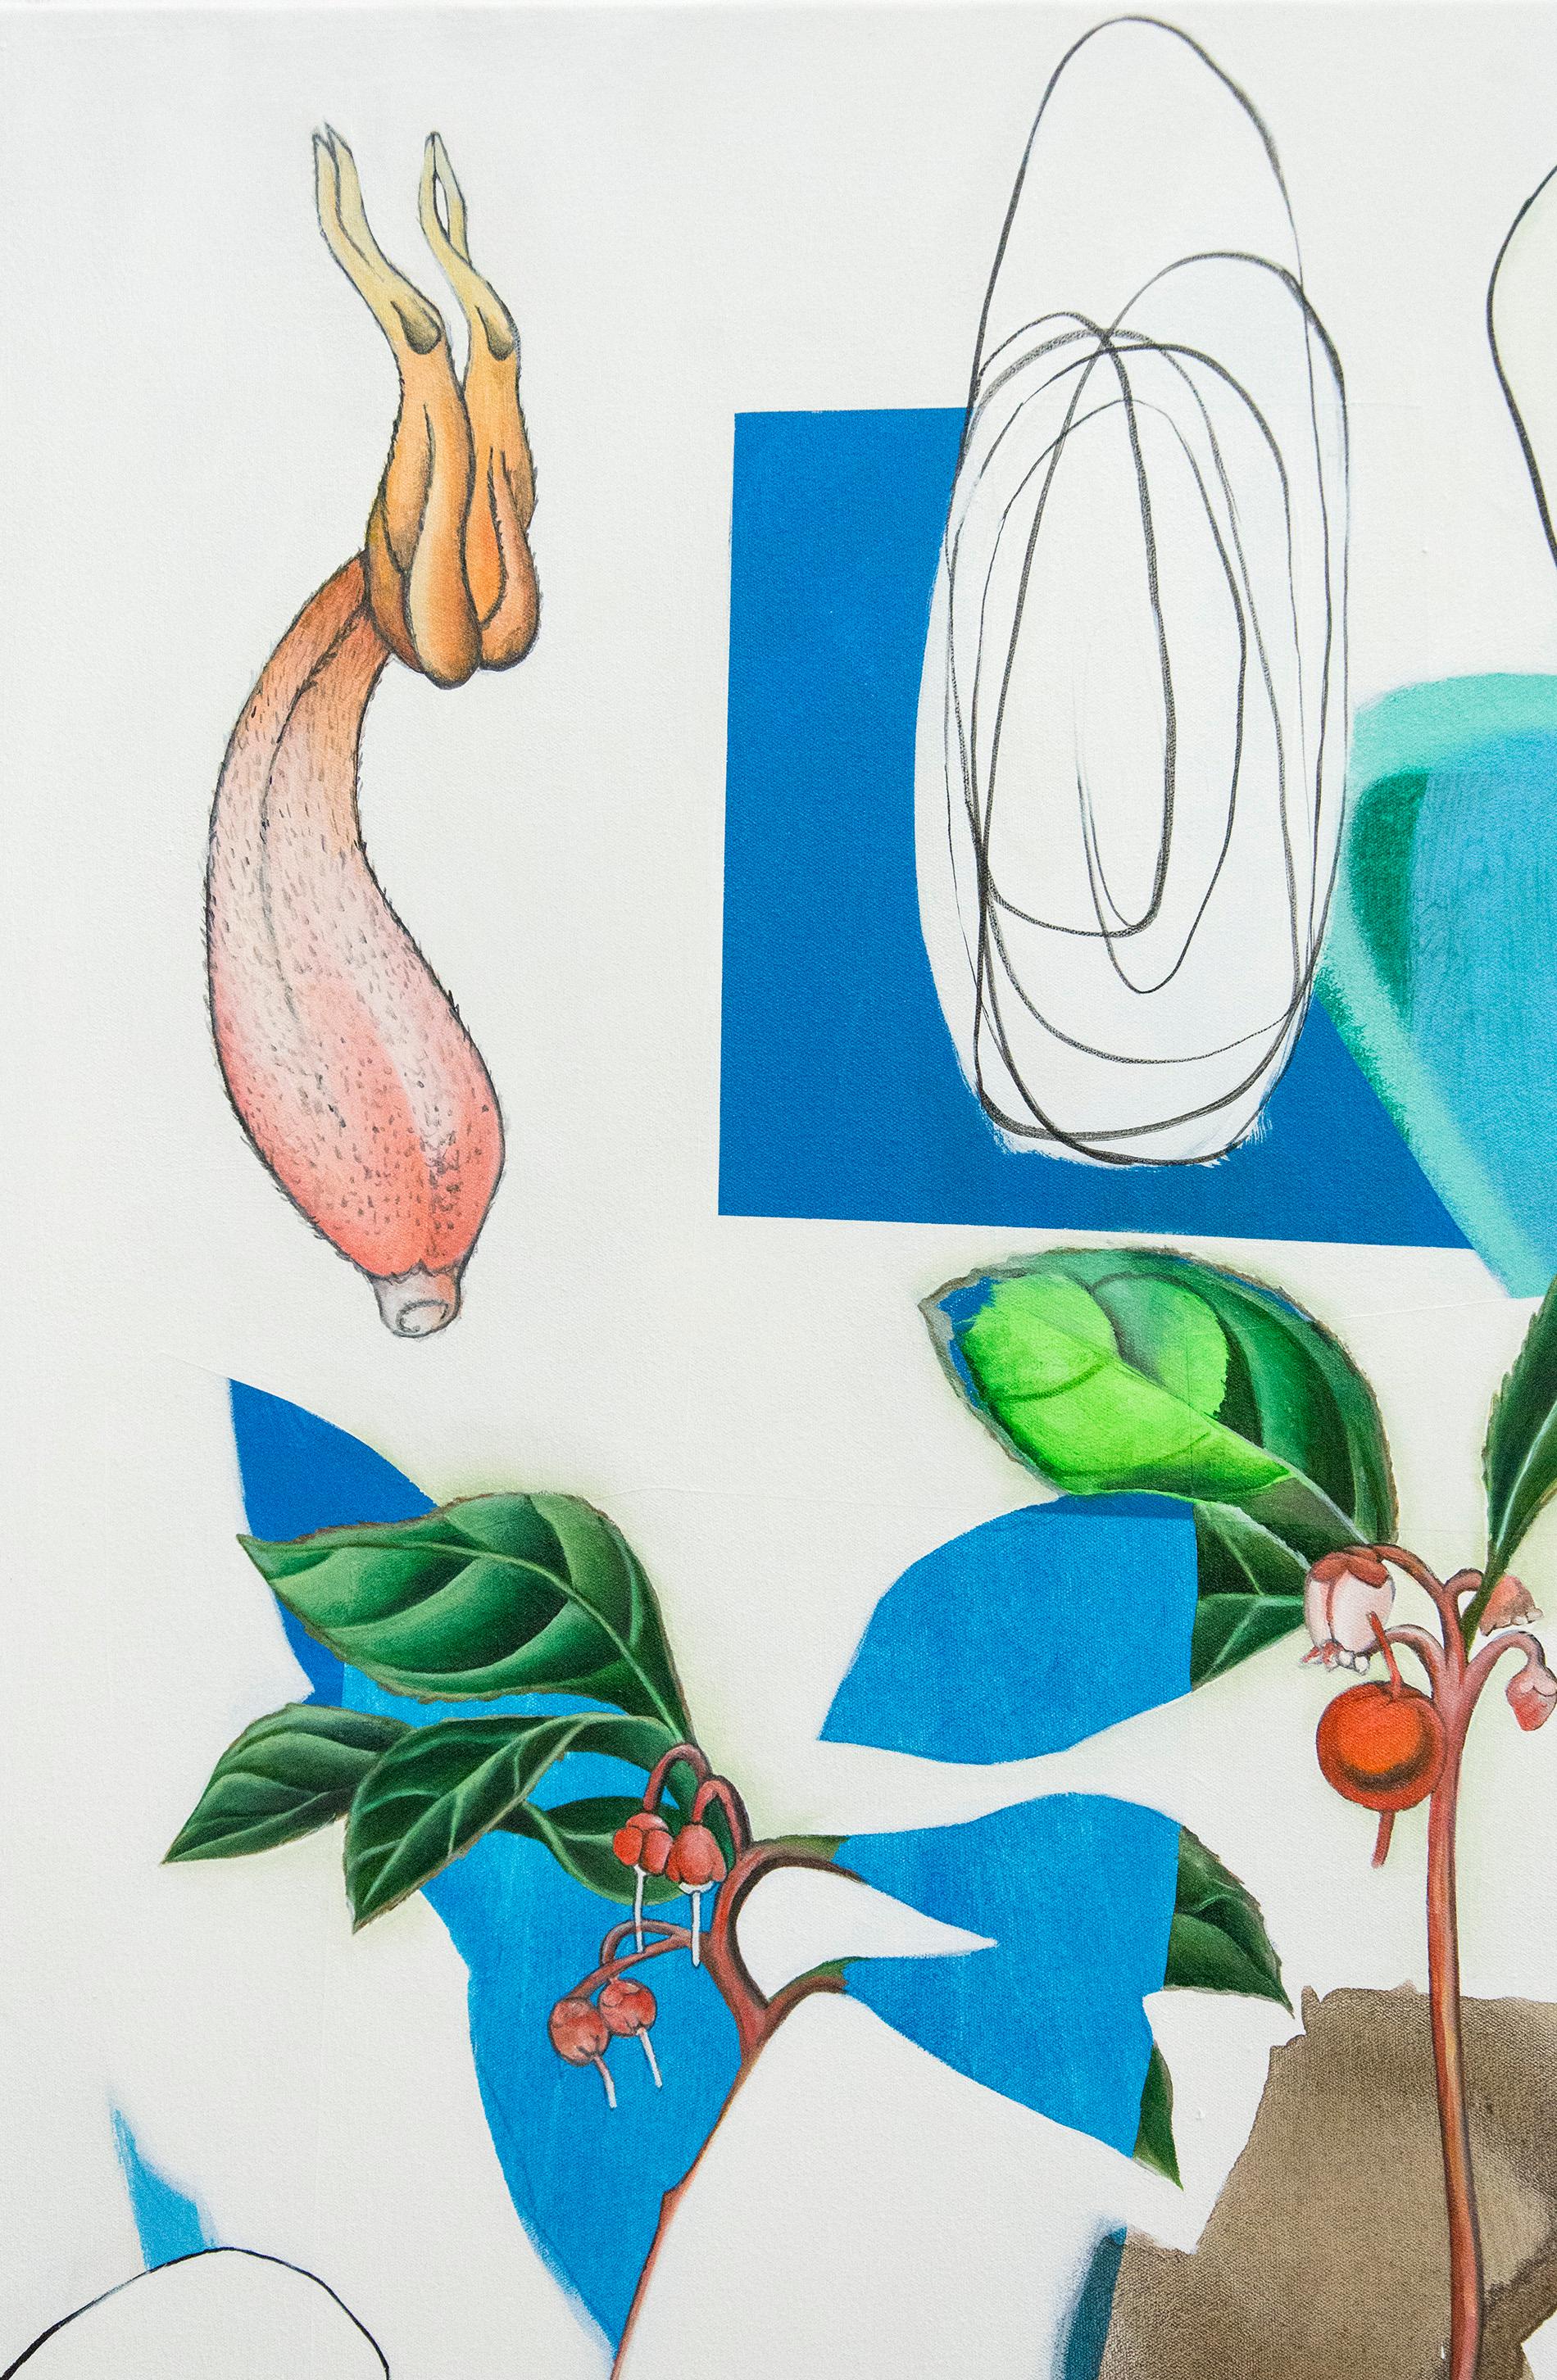 Trientalis – Inspiriert von Erzählungen und botanischen Zeichnungen von Frauen im Naturgewerbe (Zeitgenössisch), Painting, von Fiona Ackerman